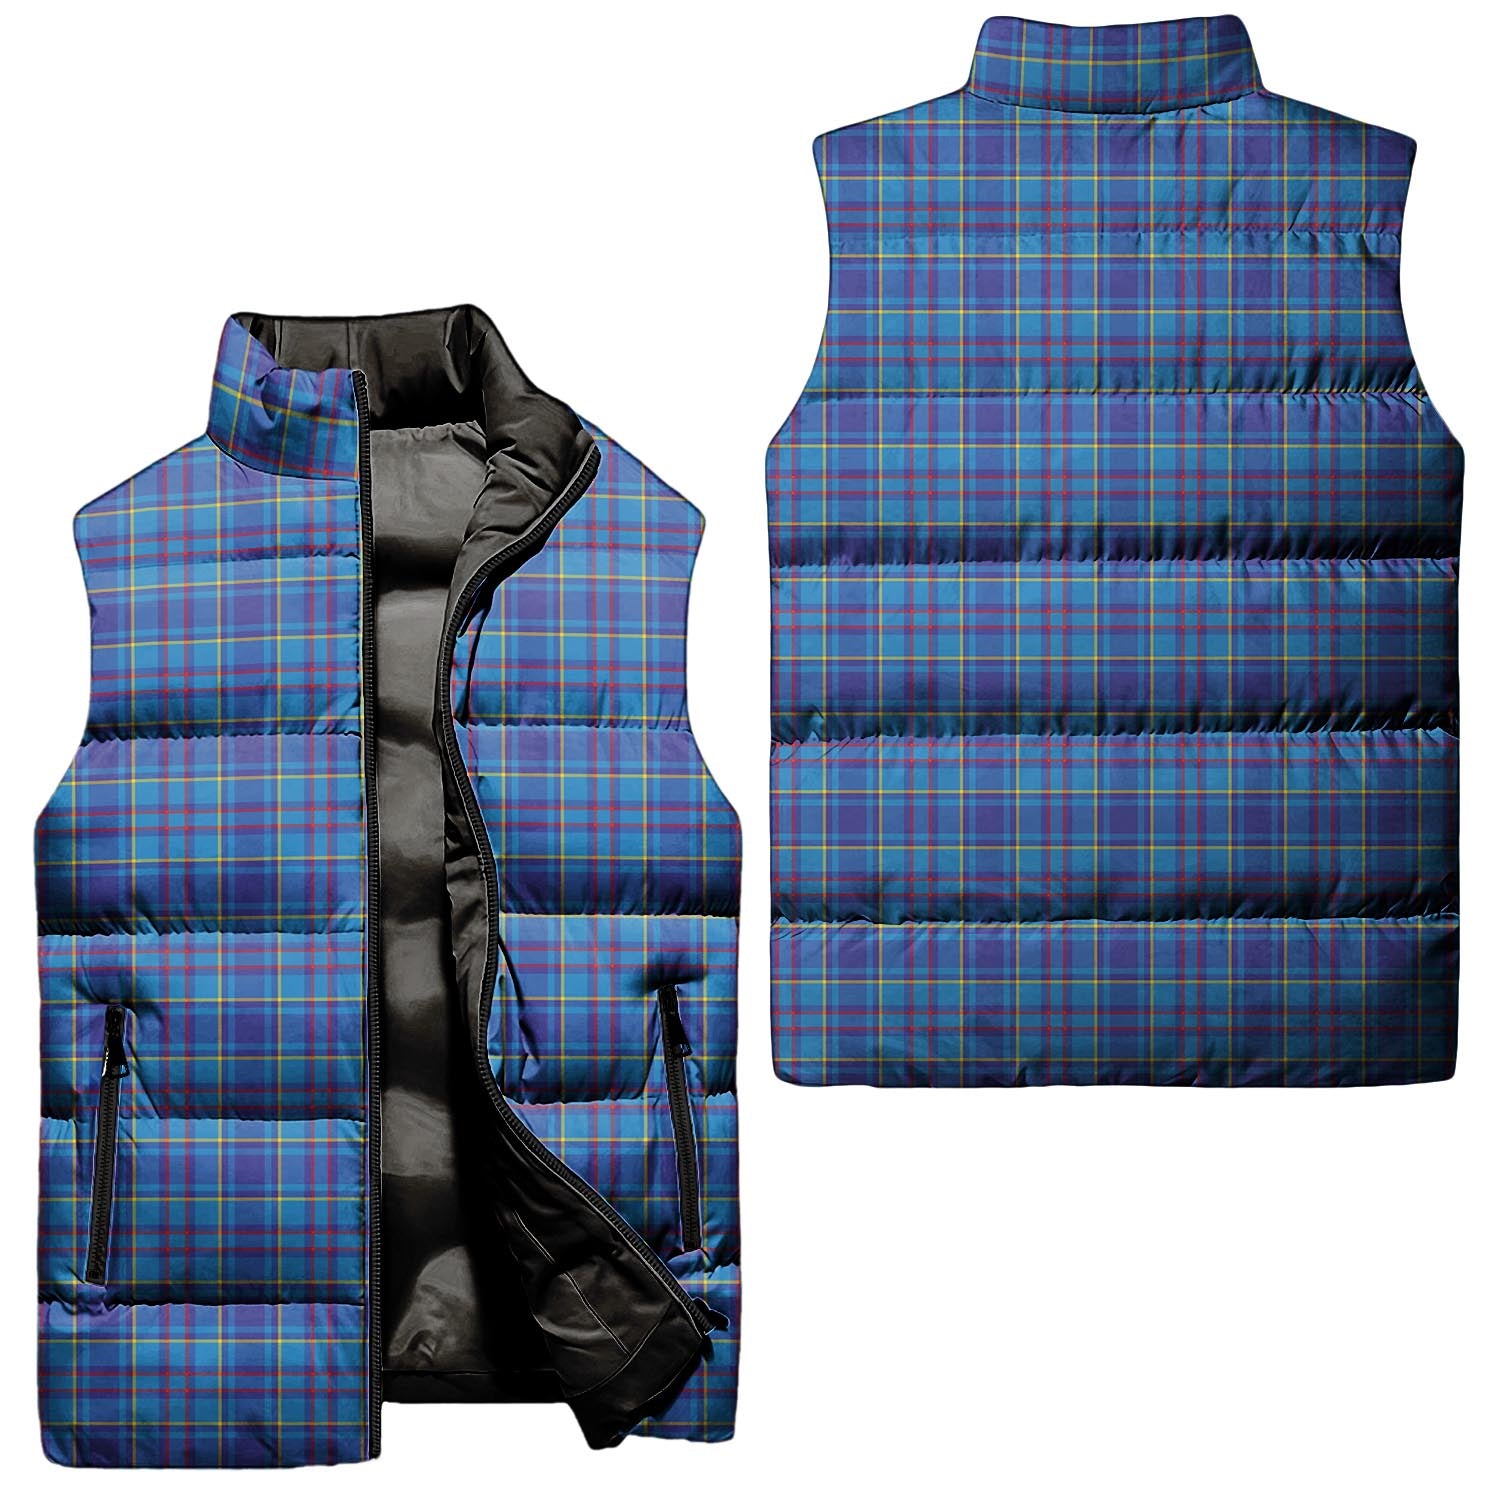 mercer-modern-tartan-puffer-vest-tartan-plaid-sleeveless-down-jacket